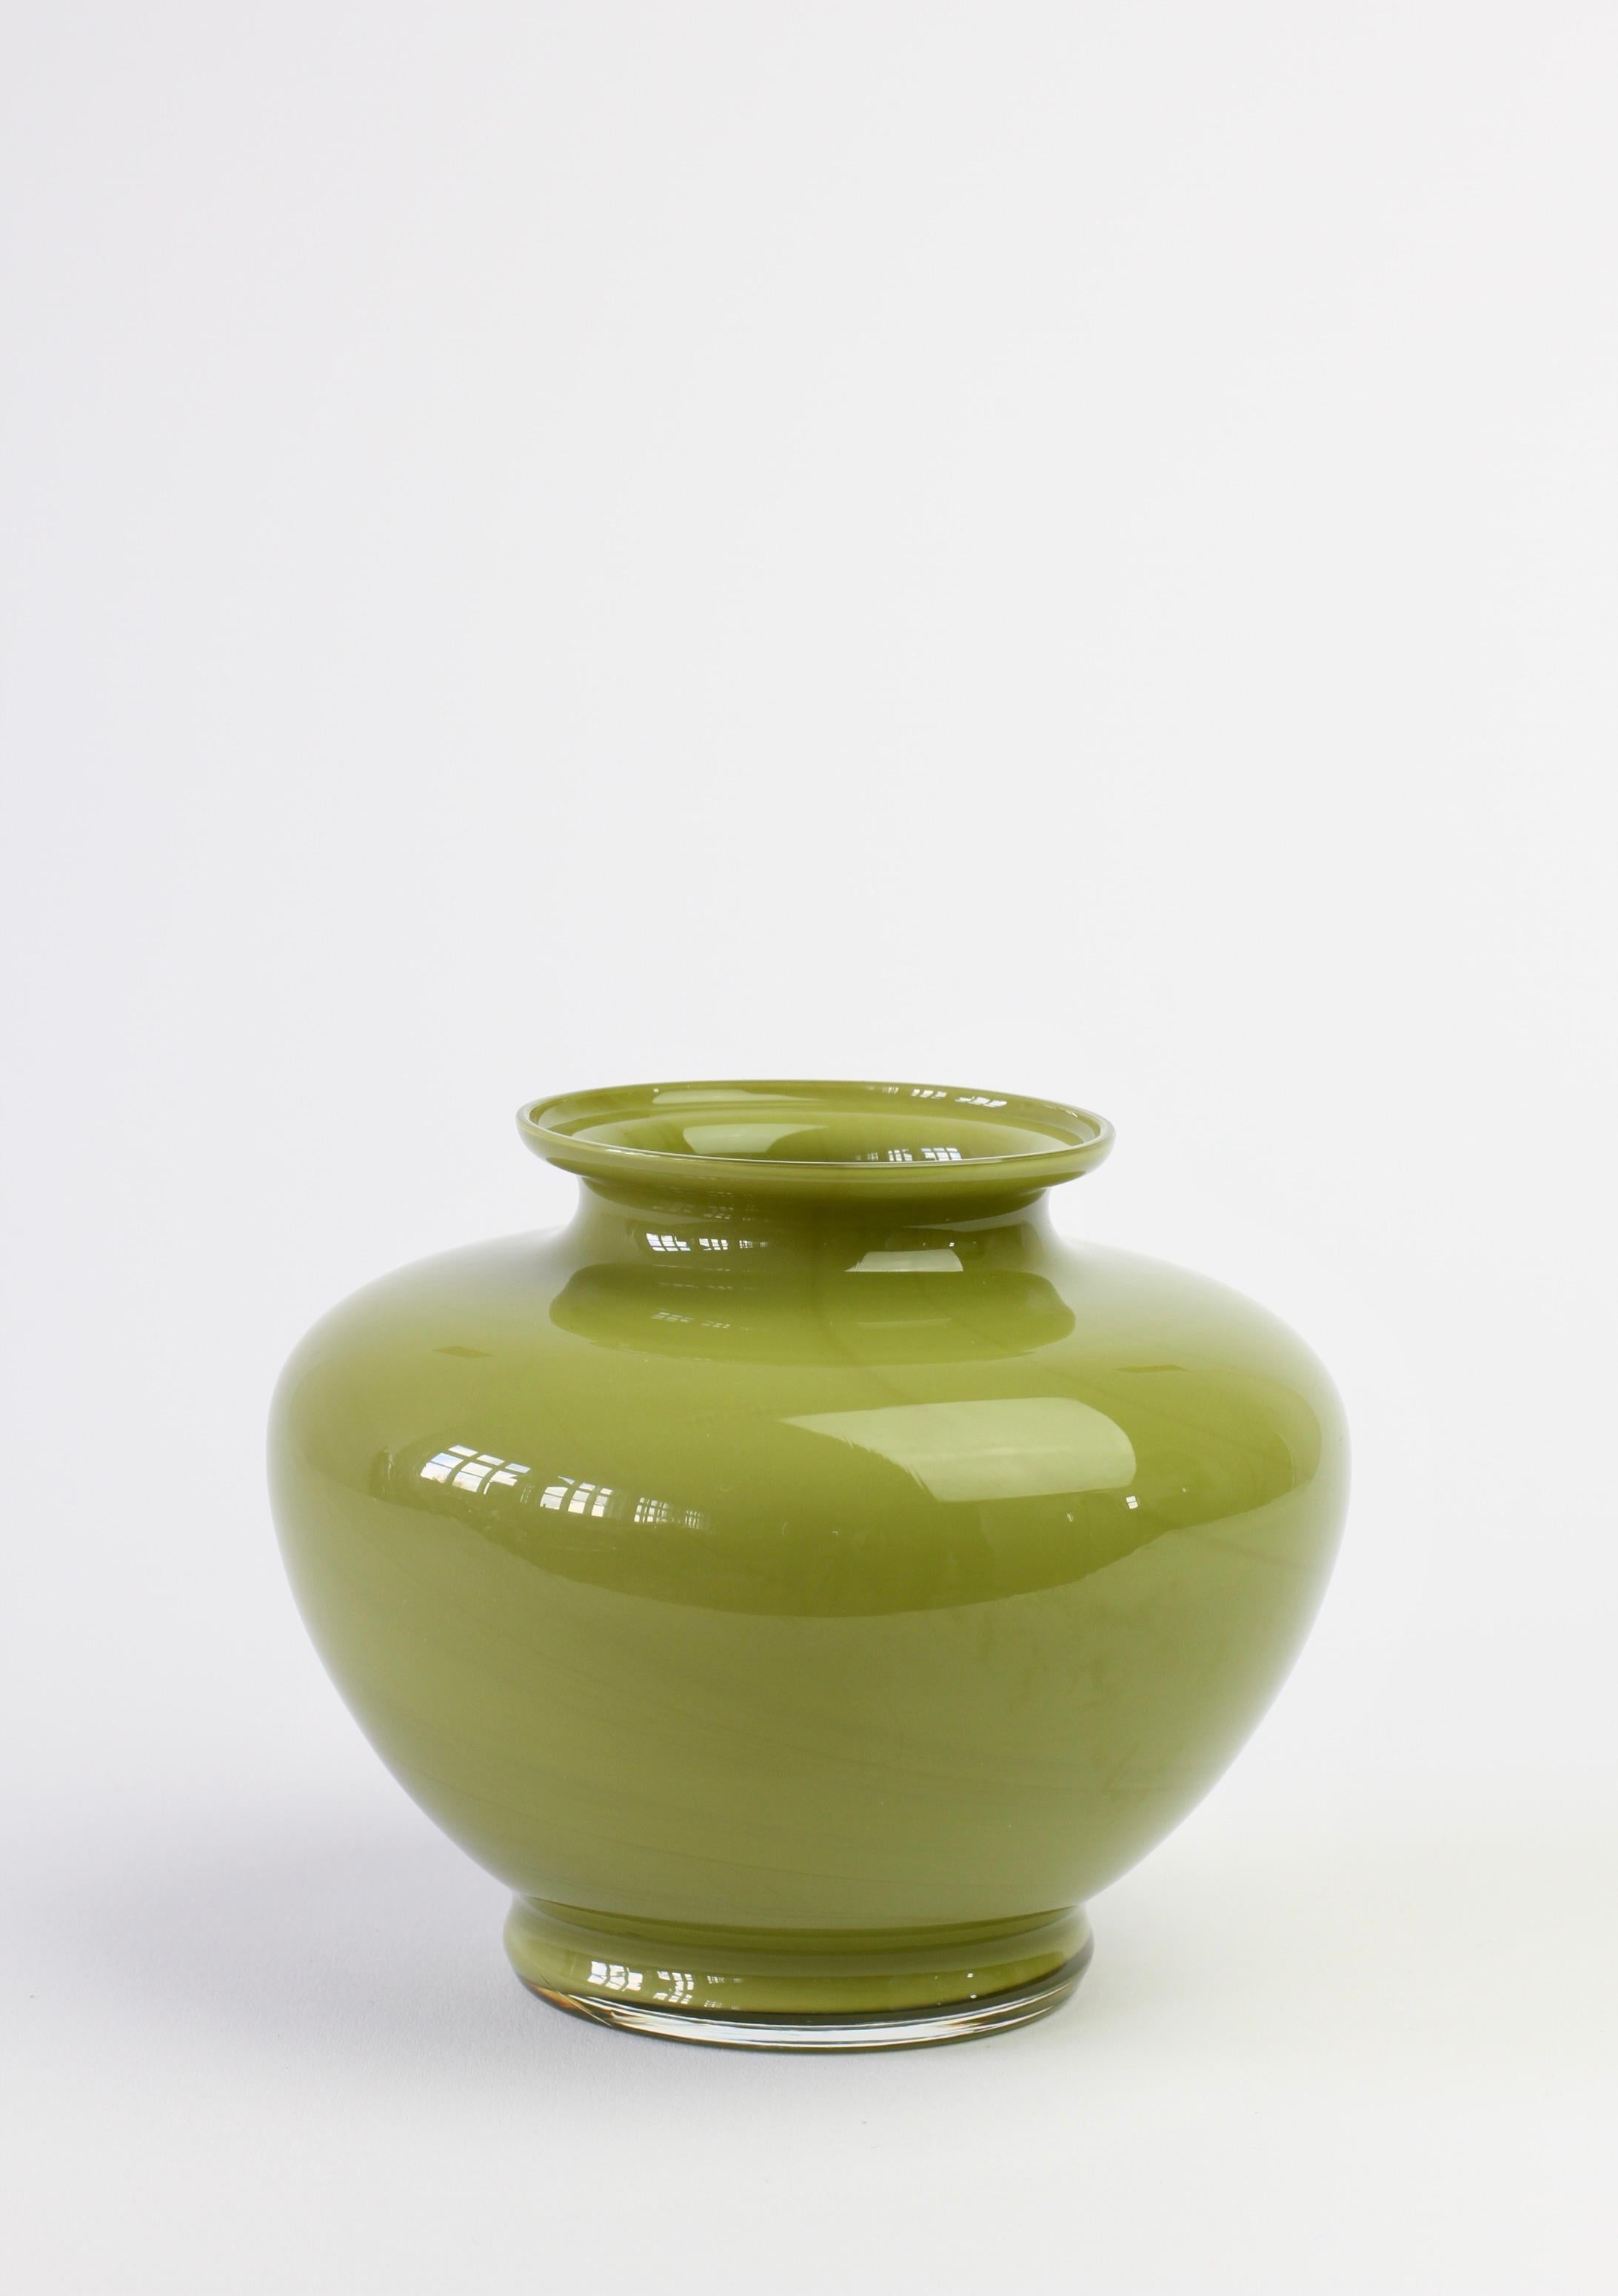 Apfel- oder moosgrüne Cenedese Vase oder Gefäß aus italienischem Muranoglas aus der Mitte des Jahrhunderts, hergestellt in Italien, ca. 1970-1990. Besonders auffällig ist die elegante Form. Das Stück hat die Eigenschaften von handgedrehter